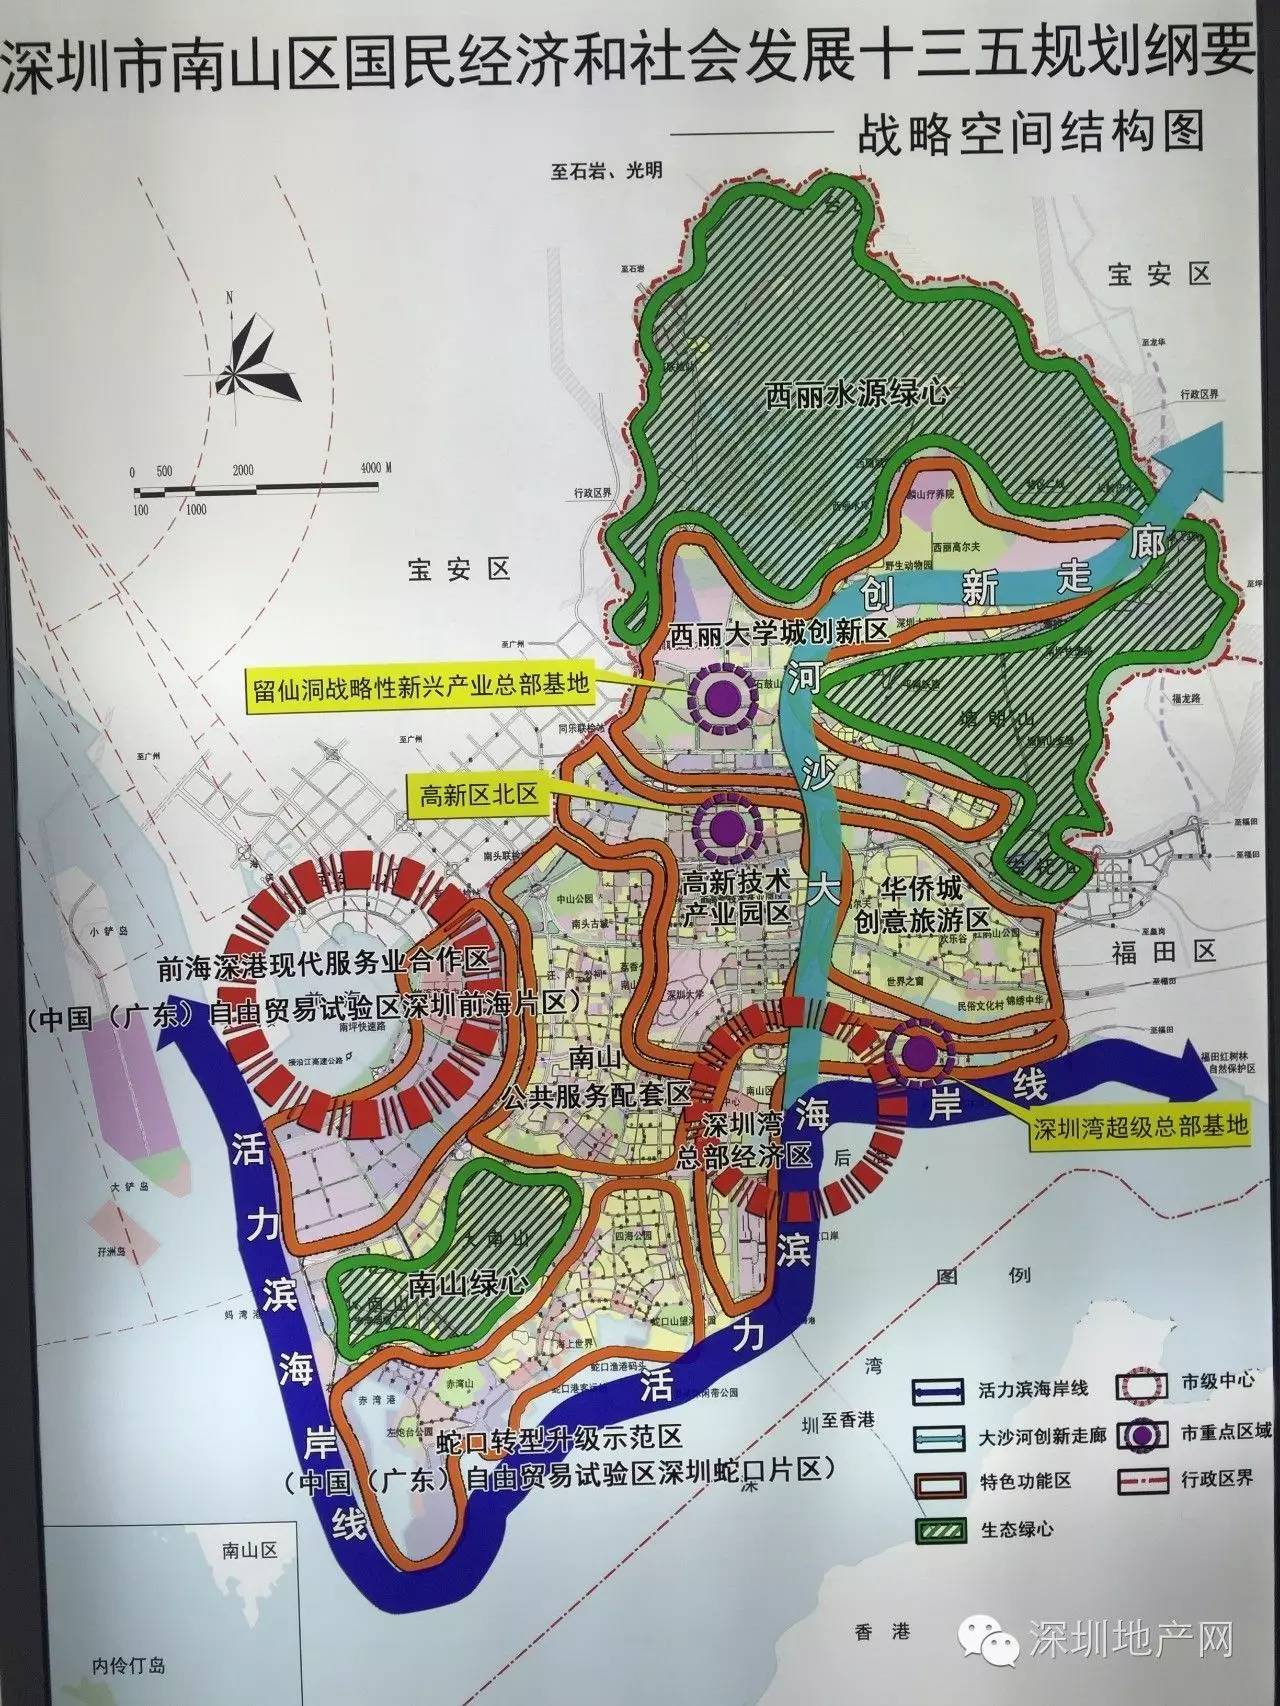 南山区总部基地布局图(放大浏览) 近日,深圳市规划和国土资源委员会